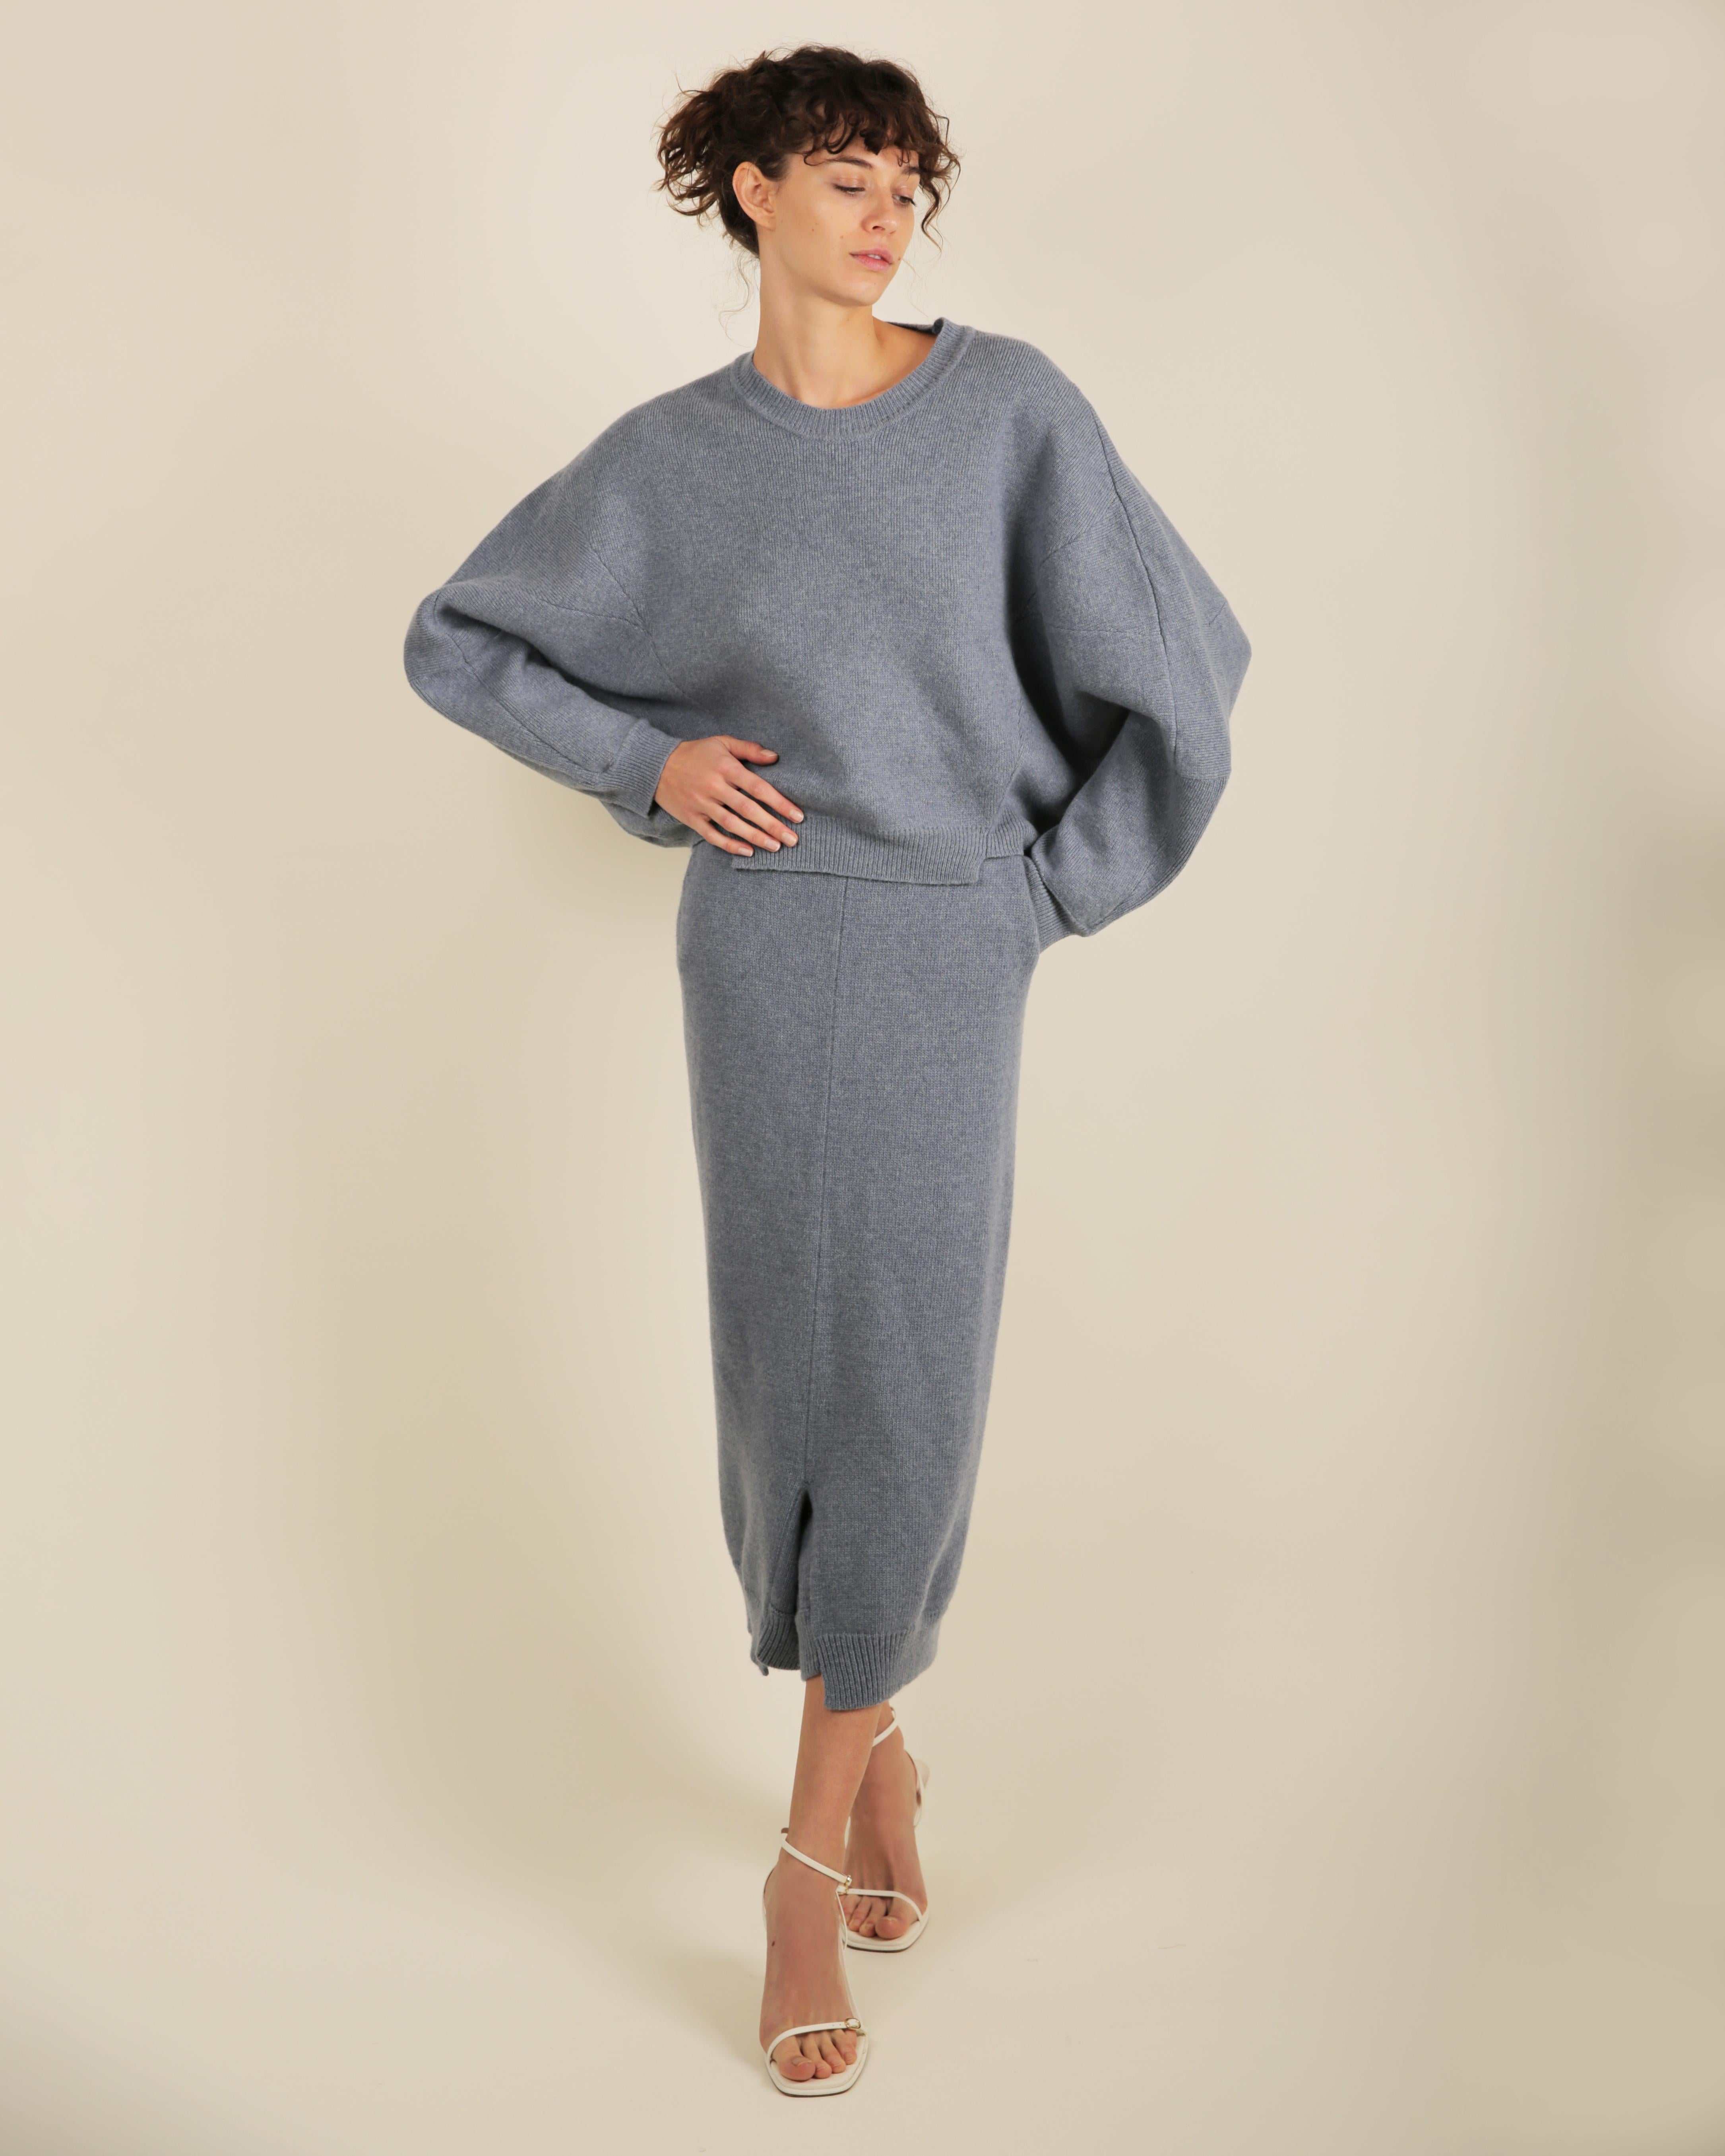 Stella McCartney Fall18 blue oversized wool alpaca matching sweater dress pants For Sale 1